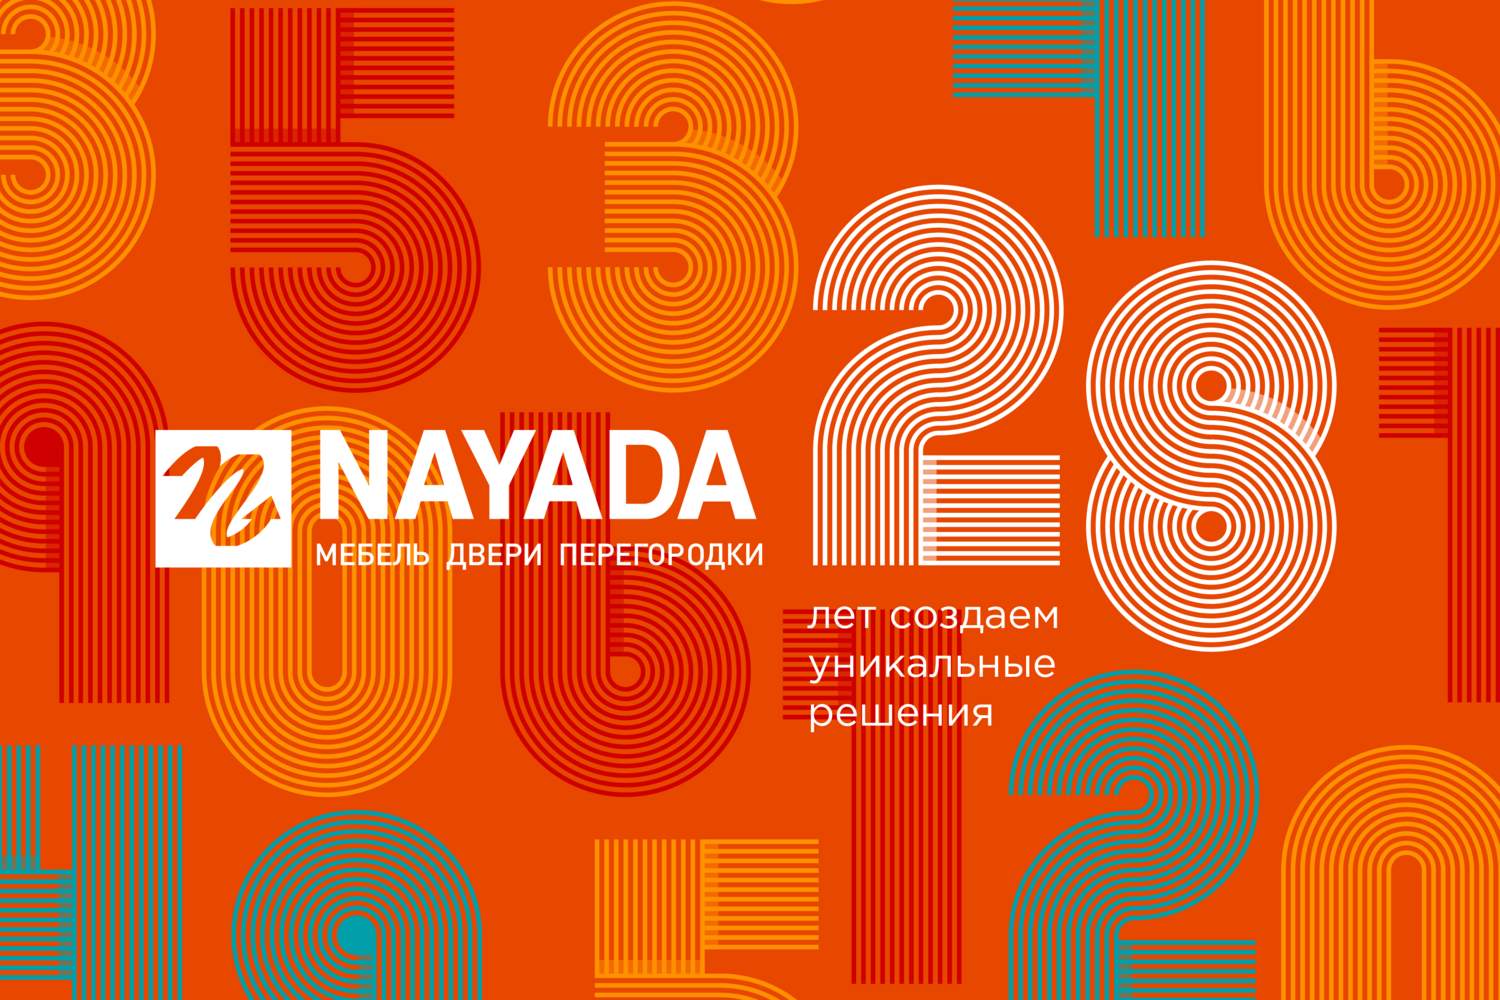 Photo Компании NAYADA исполняется 28 лет!